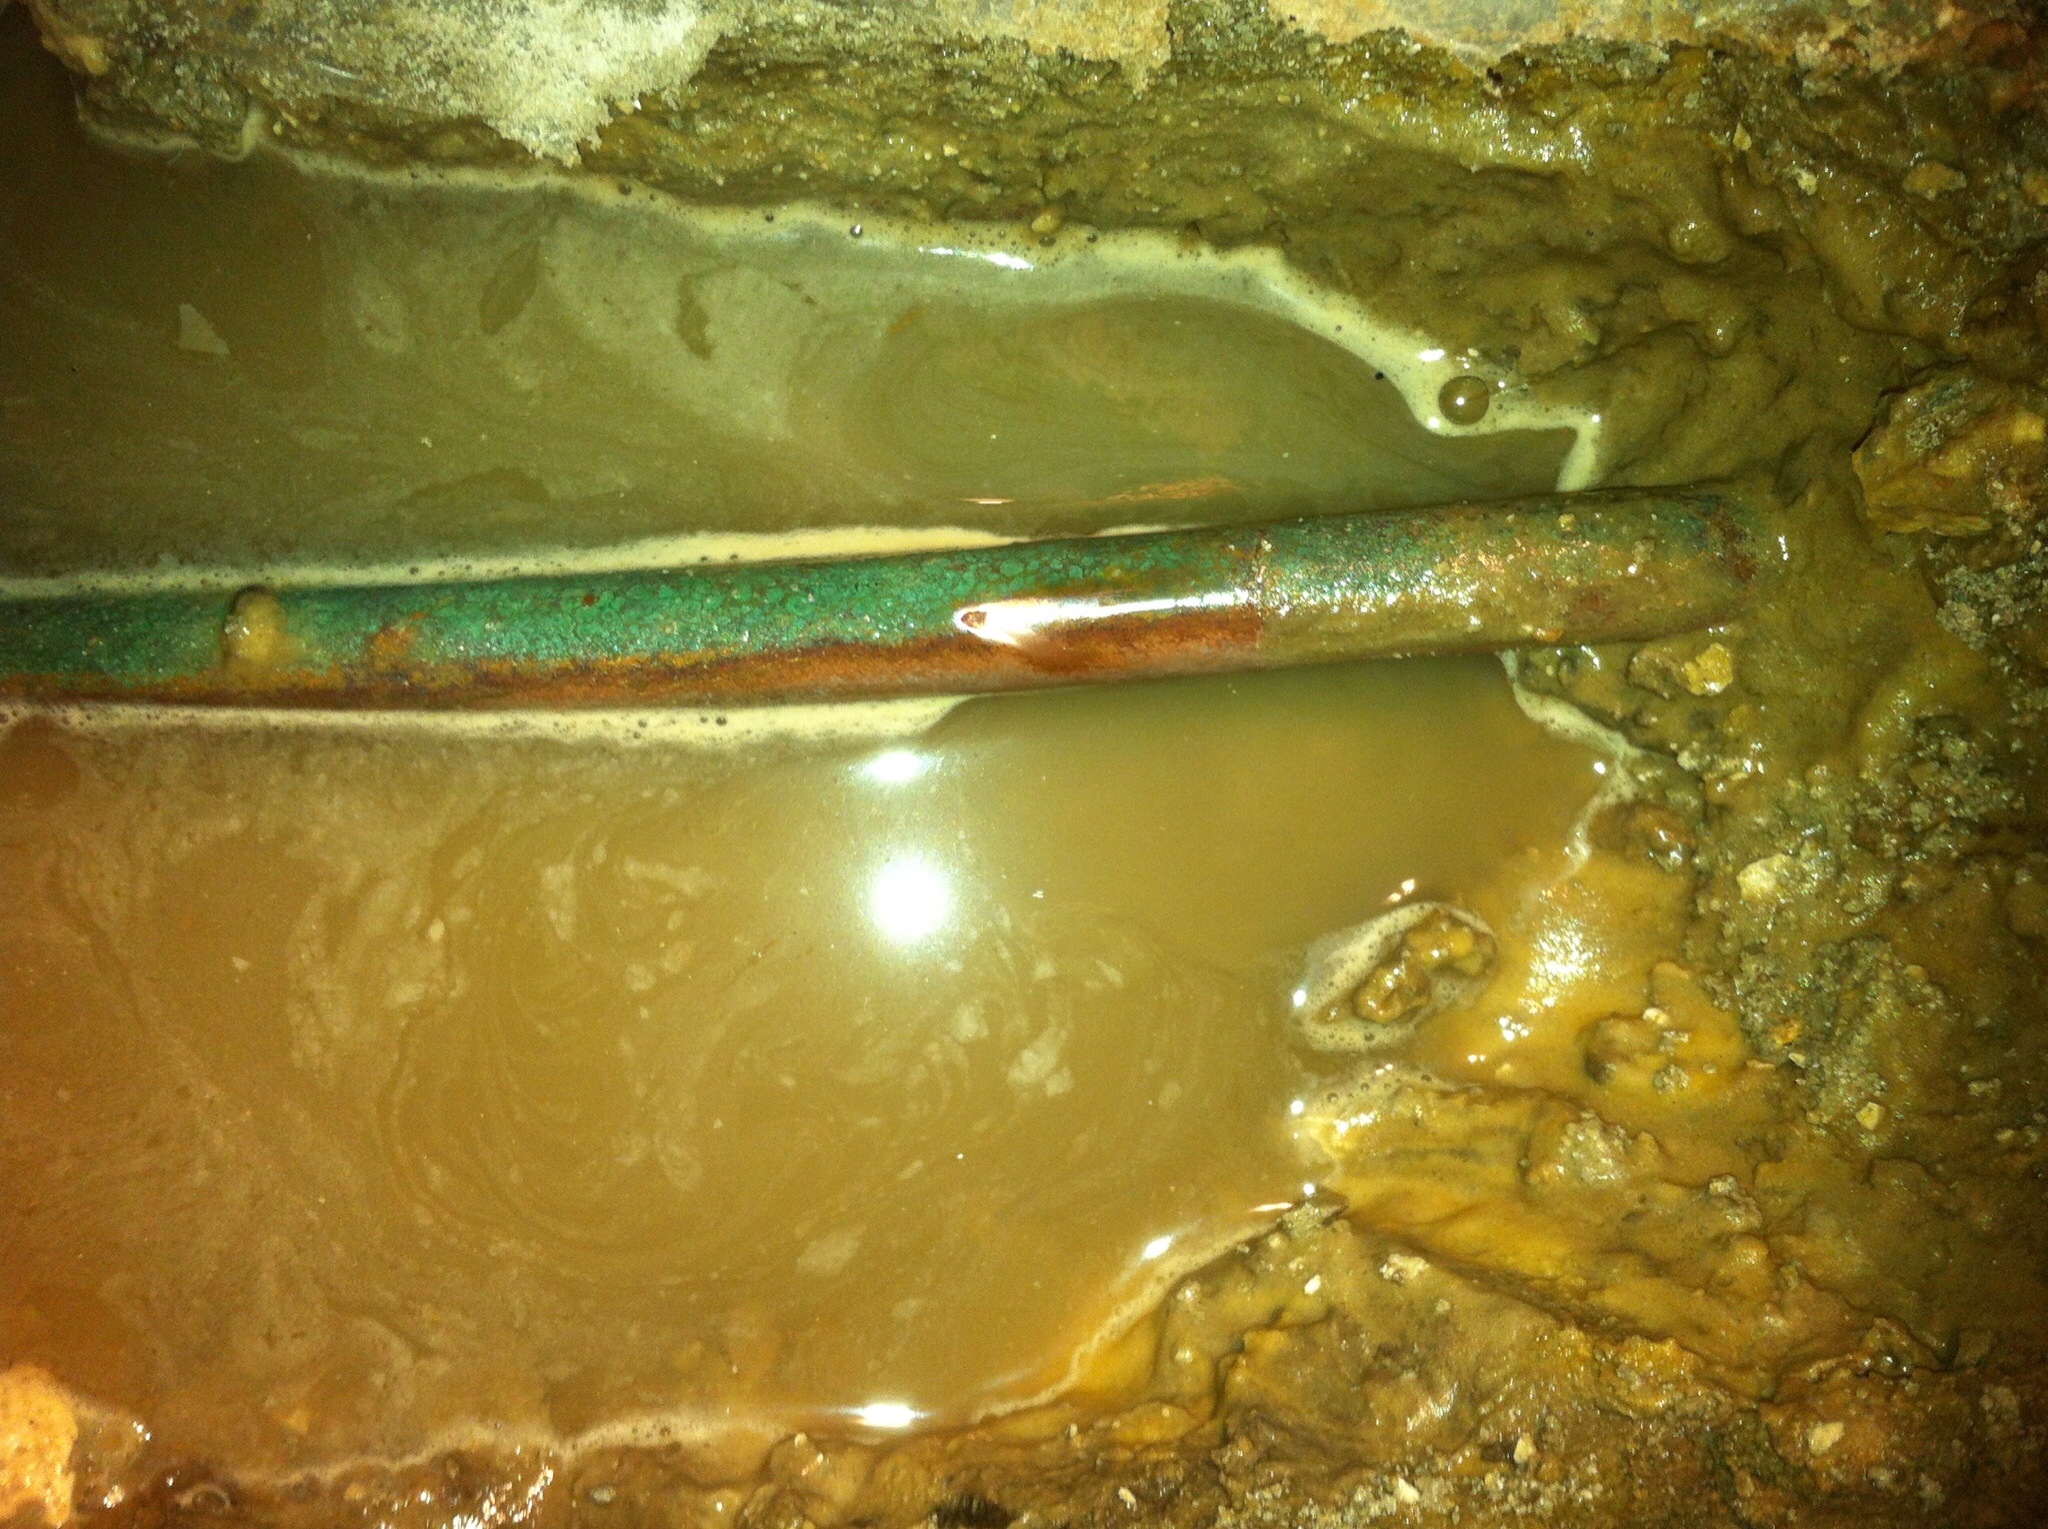 Broken copper pipe leaking